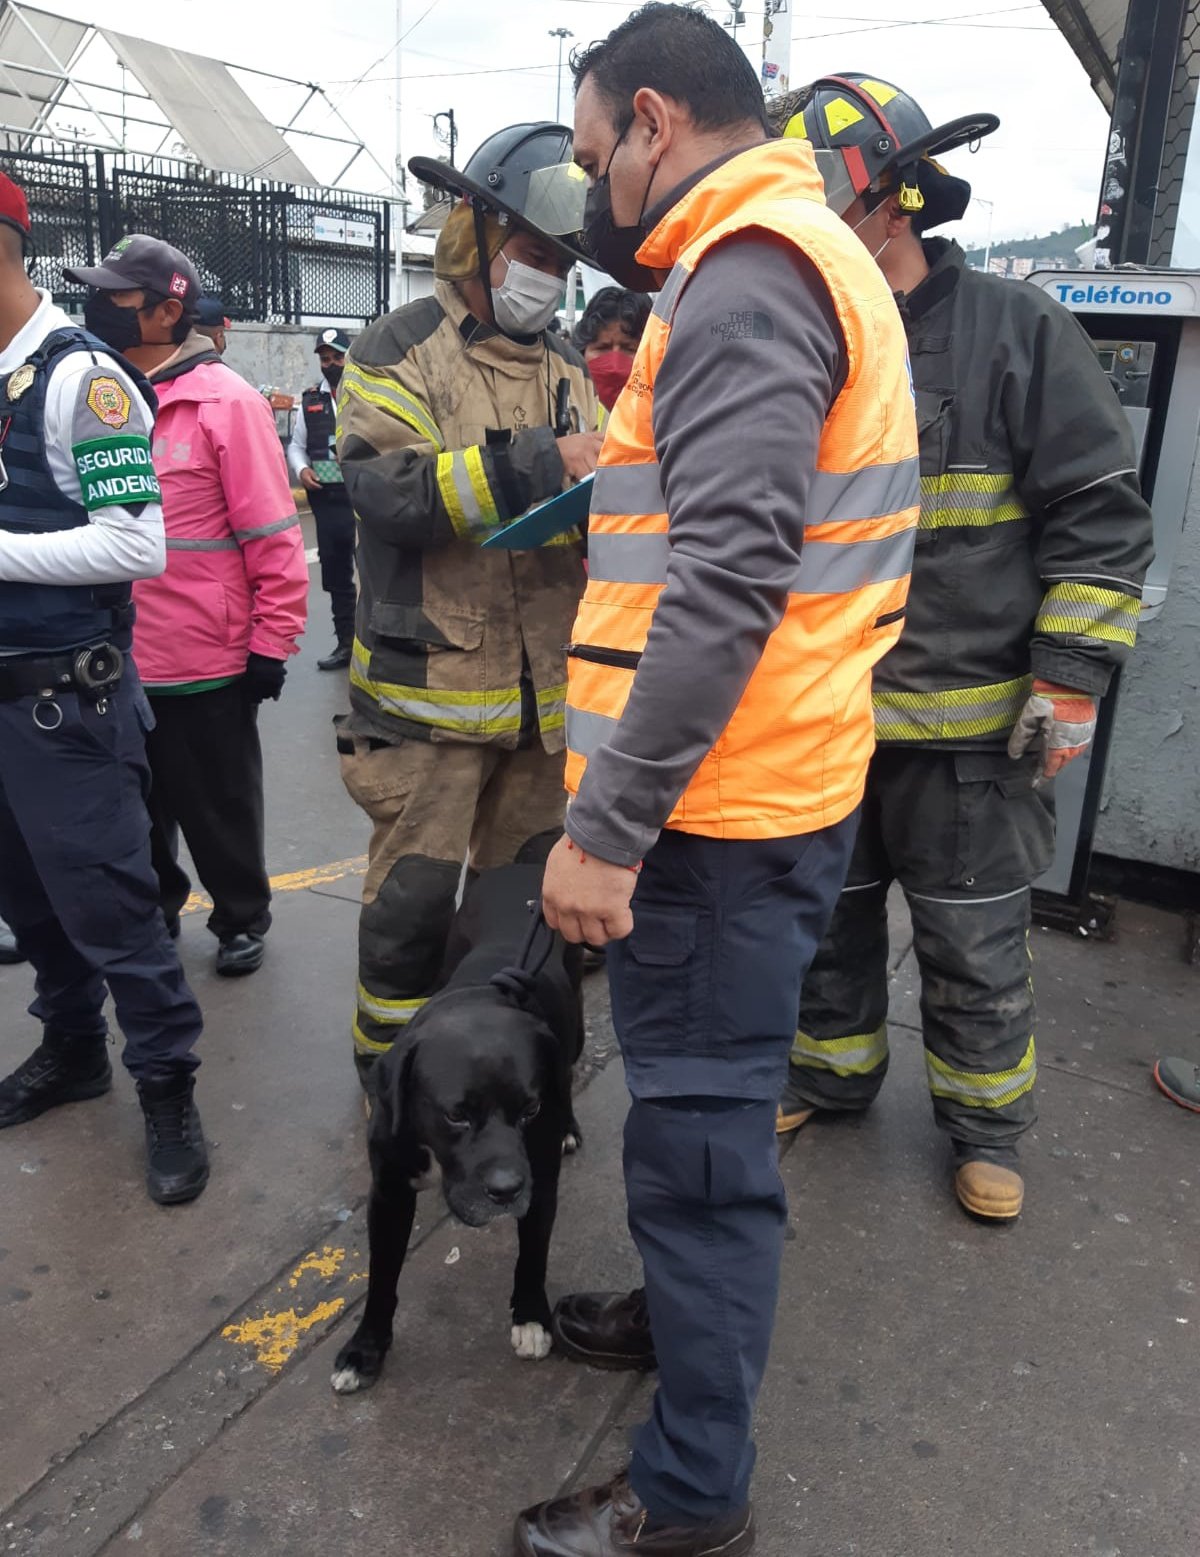 ¡Se rifaron! Bomberos de CDMX rescatan a un perrito que cayó a una fosa pluvial